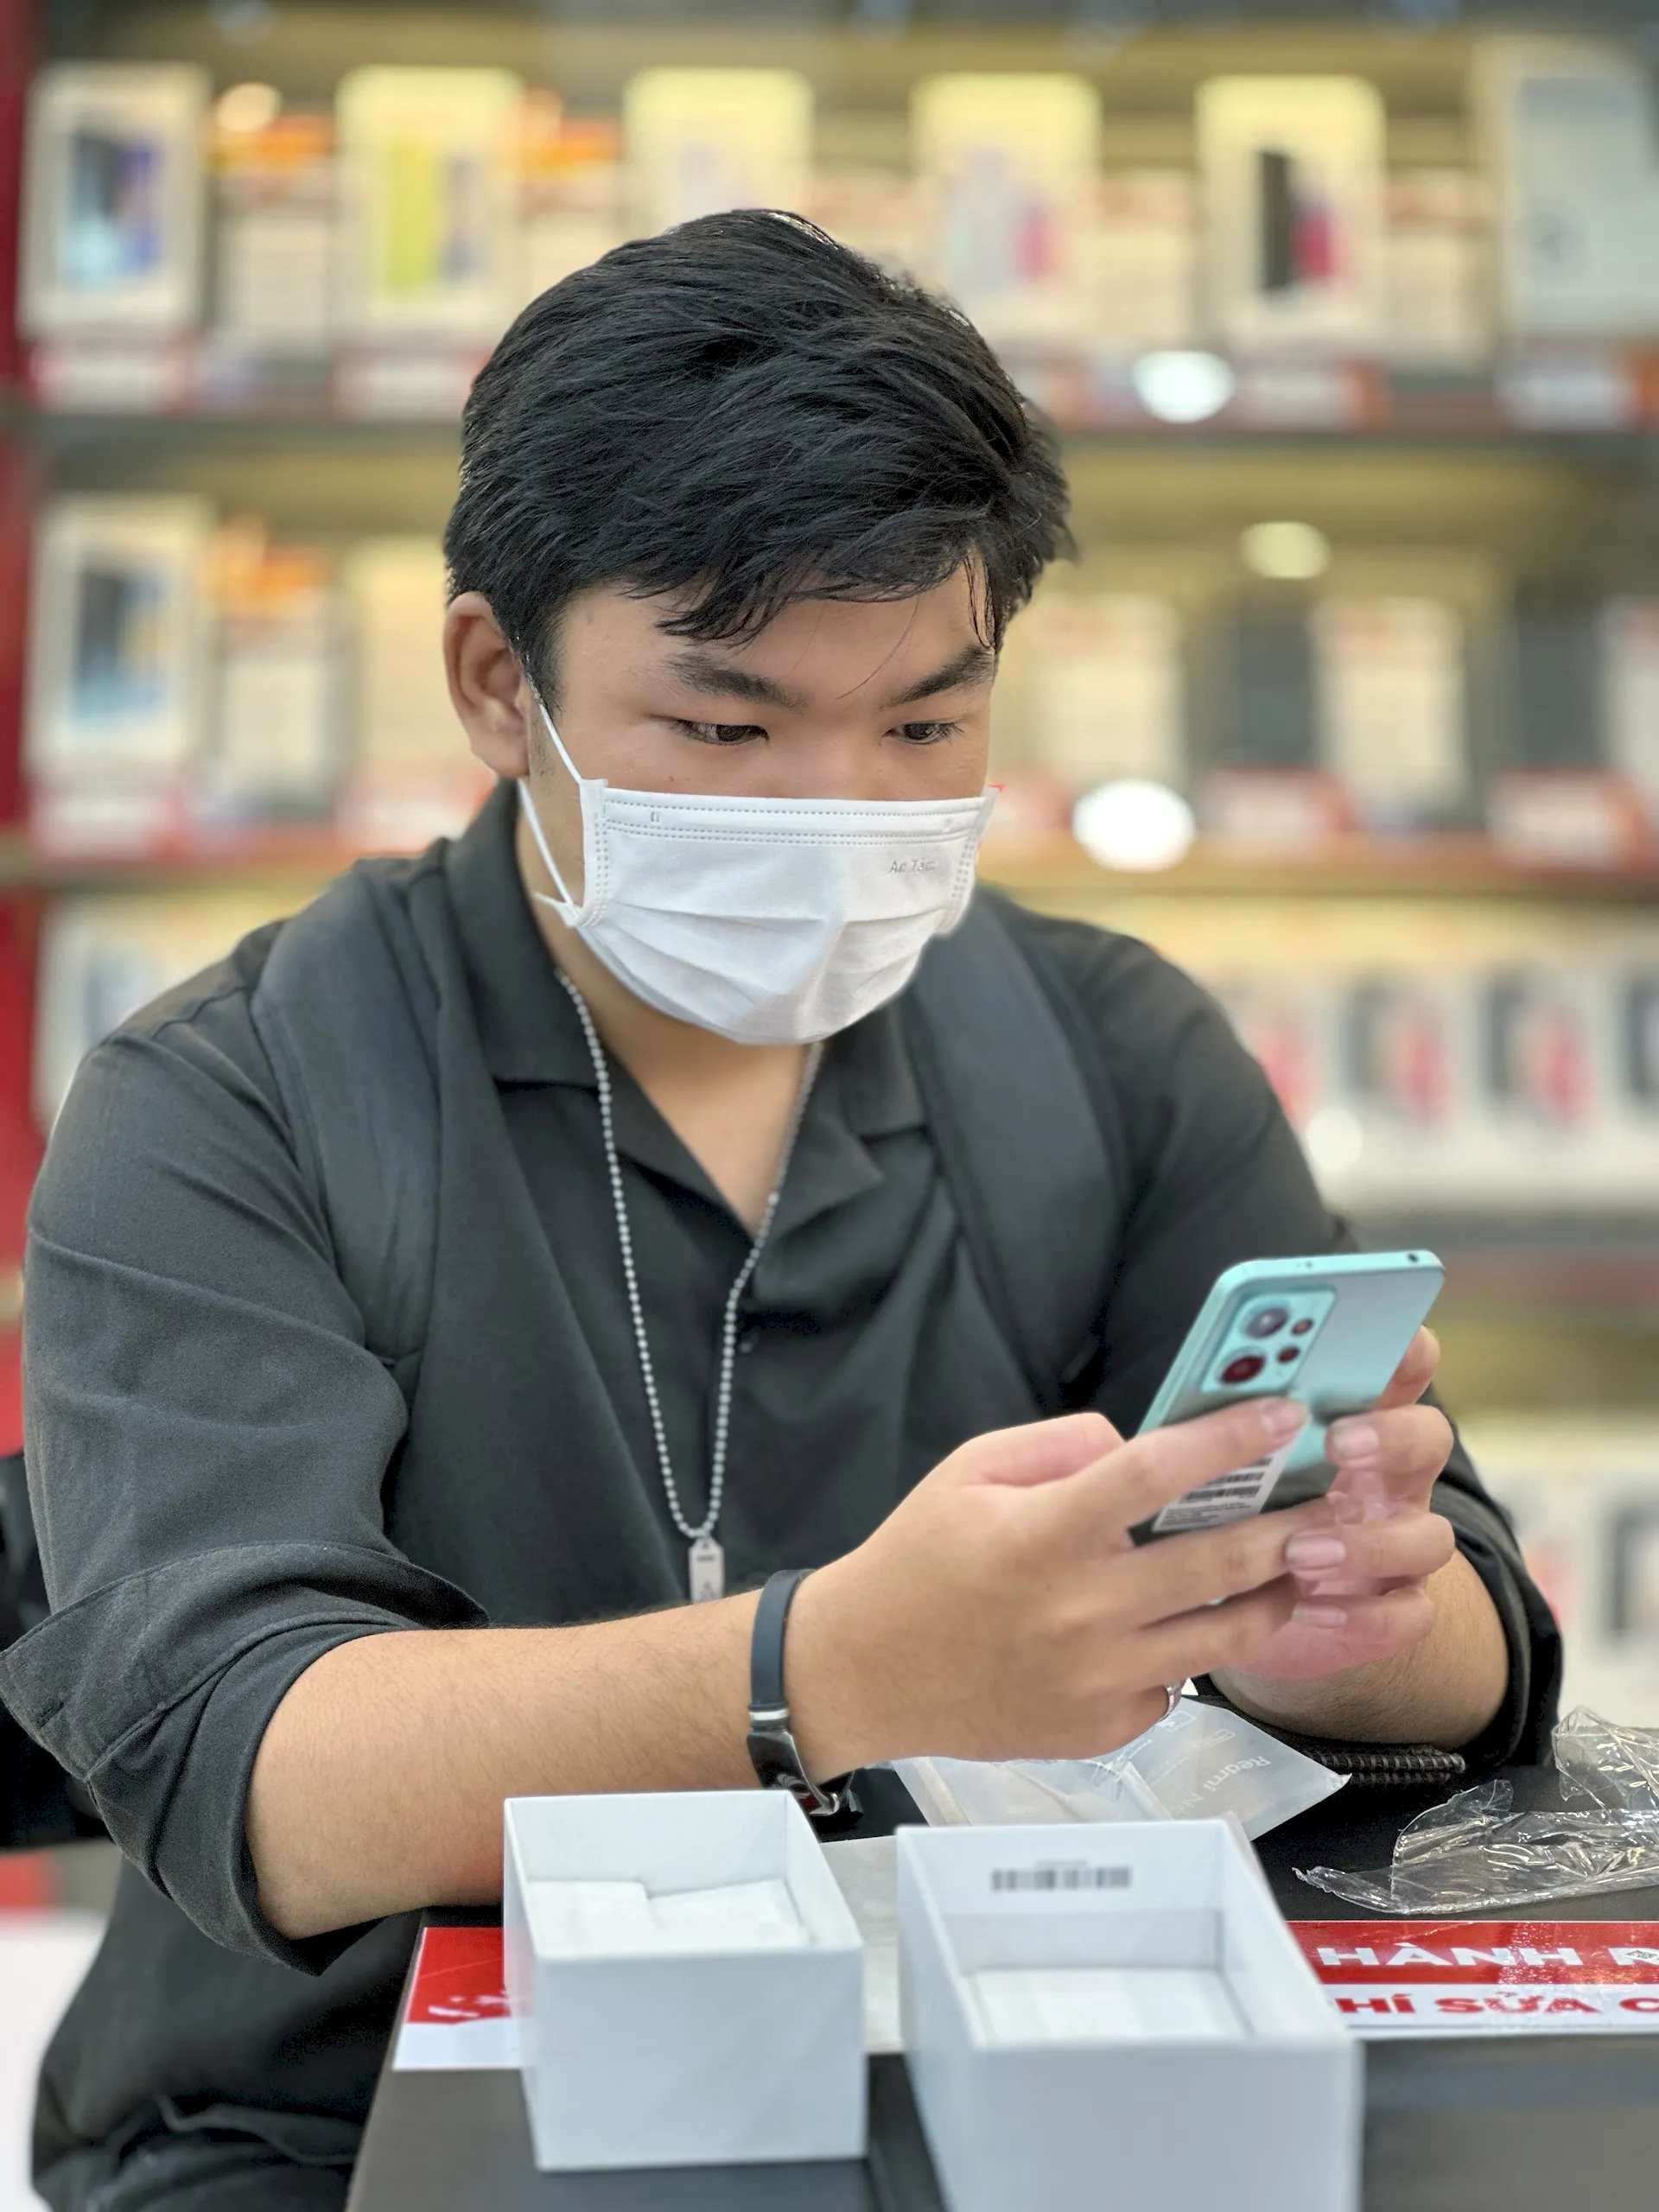 FPT Shop mở bán sớm Xiaomi Redmi Note 12 Series cùng nhiều phần quà hấp dẫn tổng giá trị hơn 80 triệu đồng